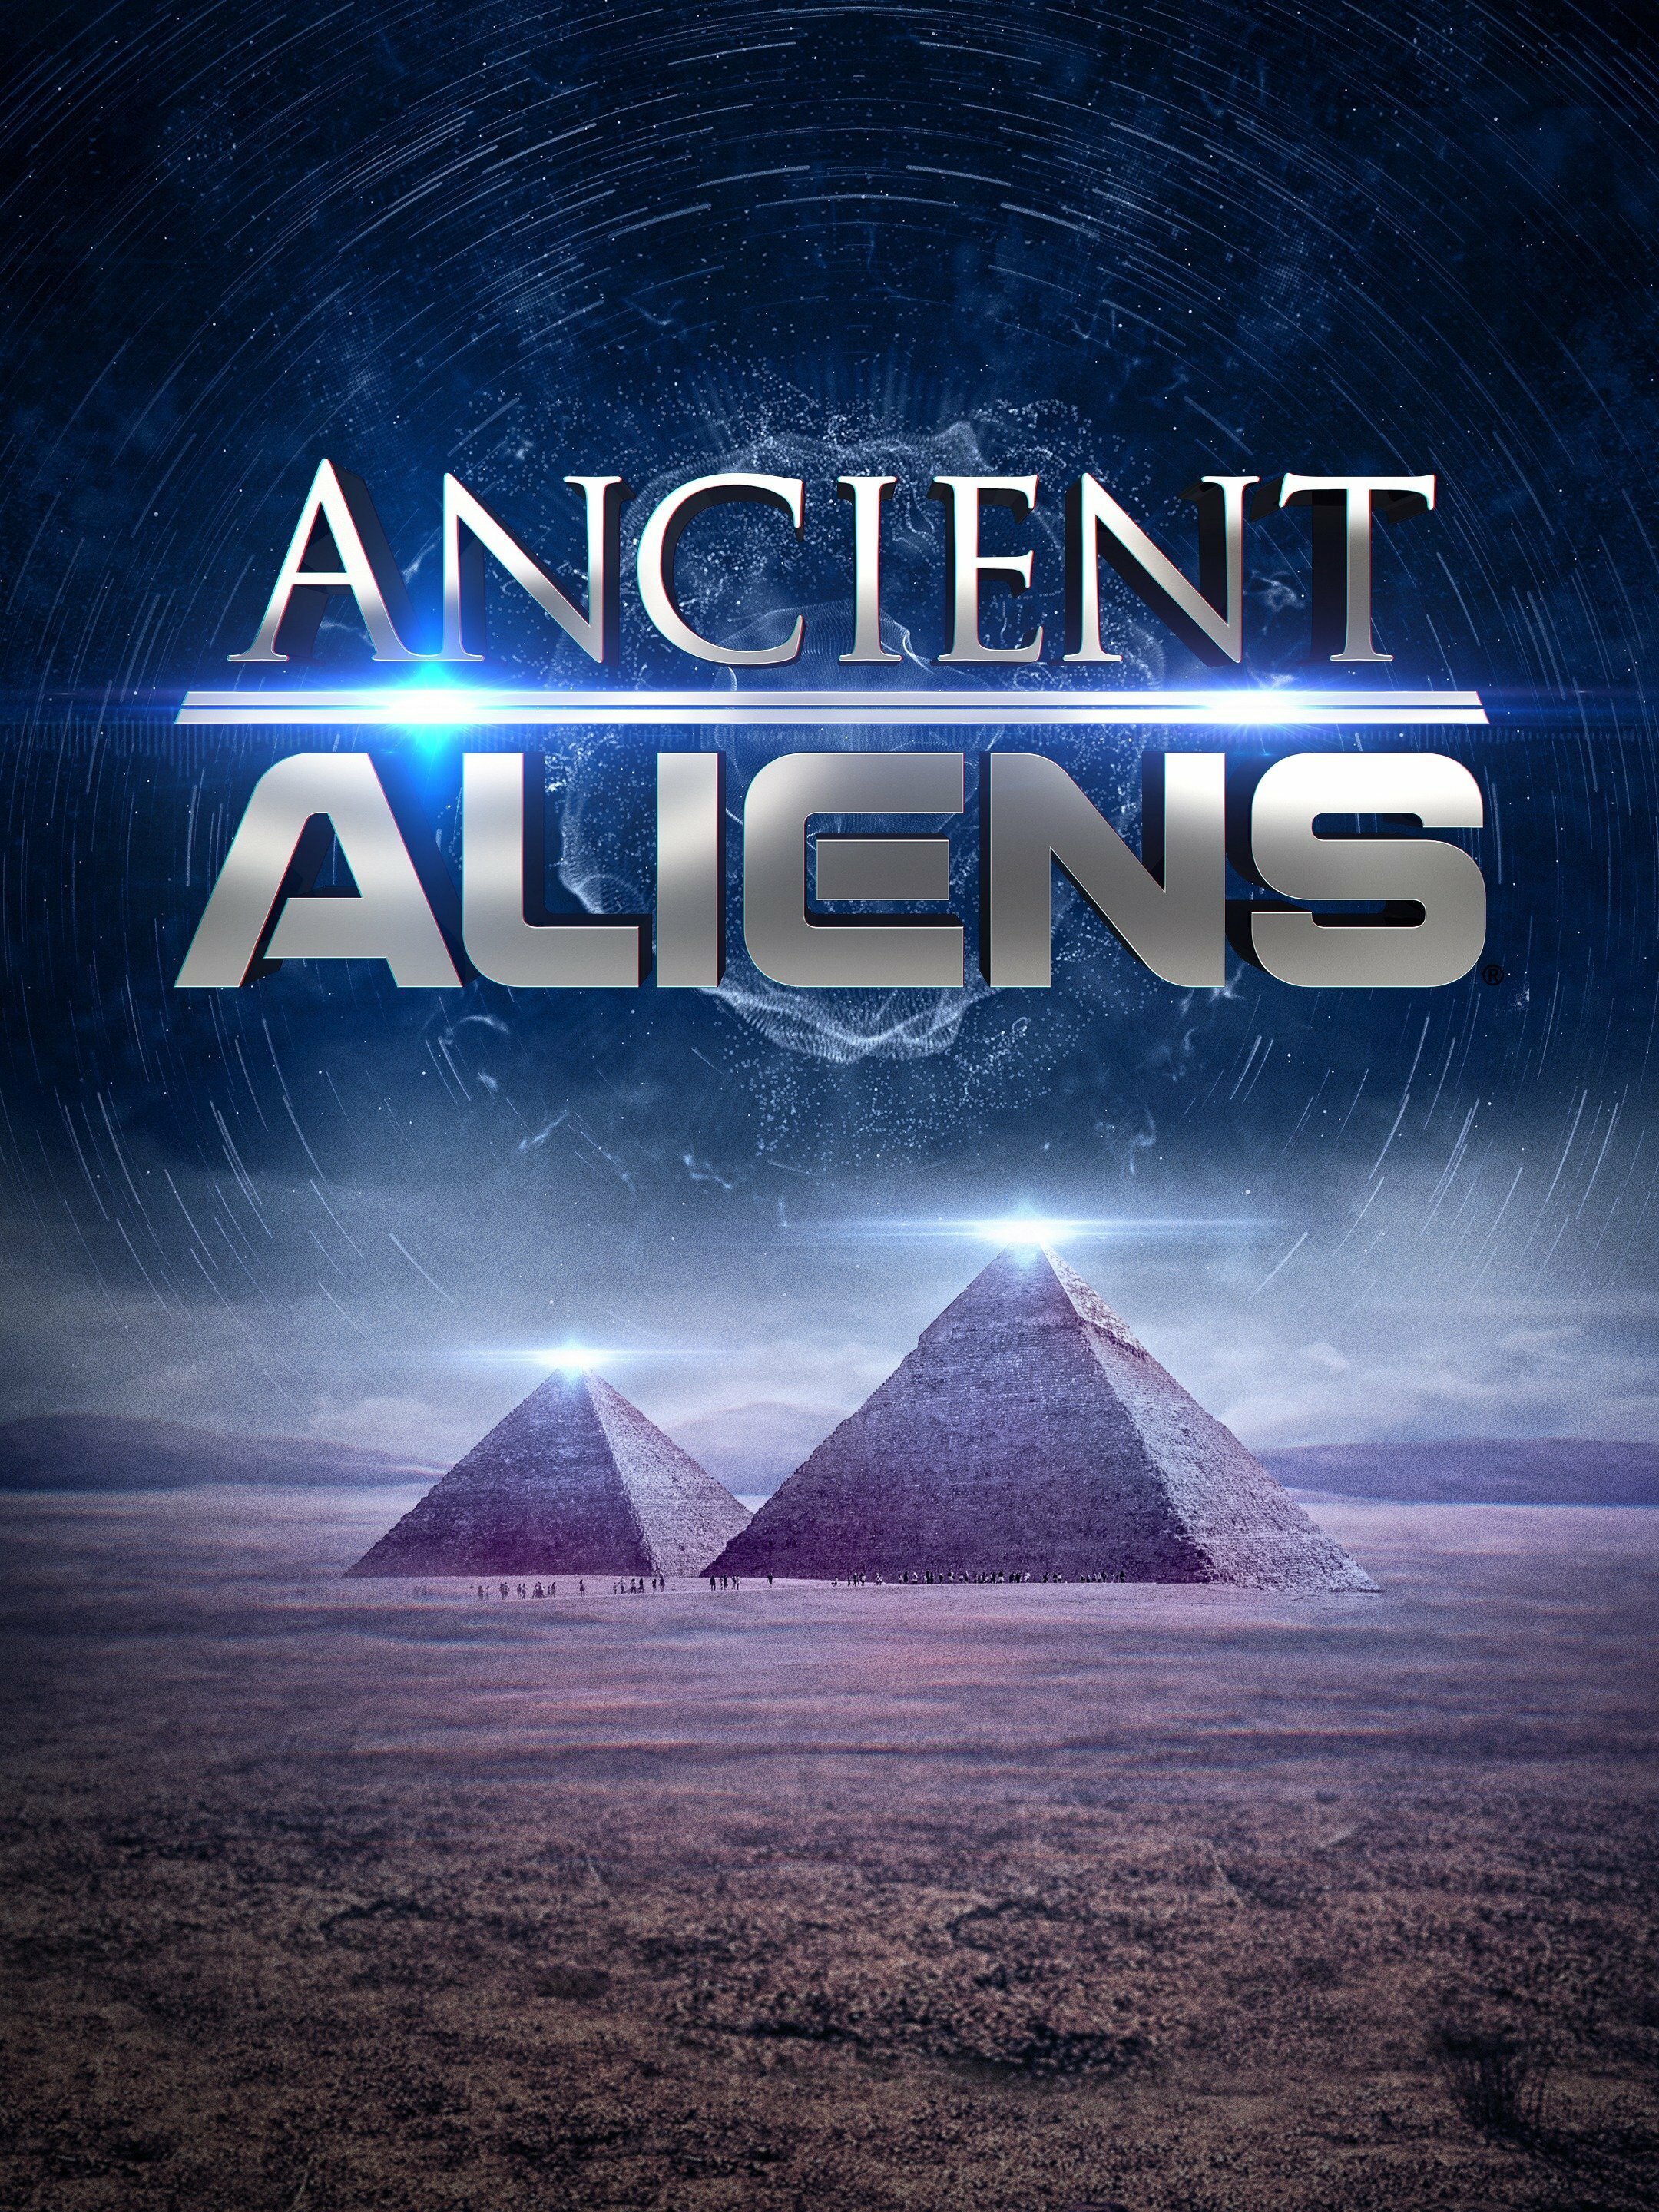 Ancient Aliens Next Episode